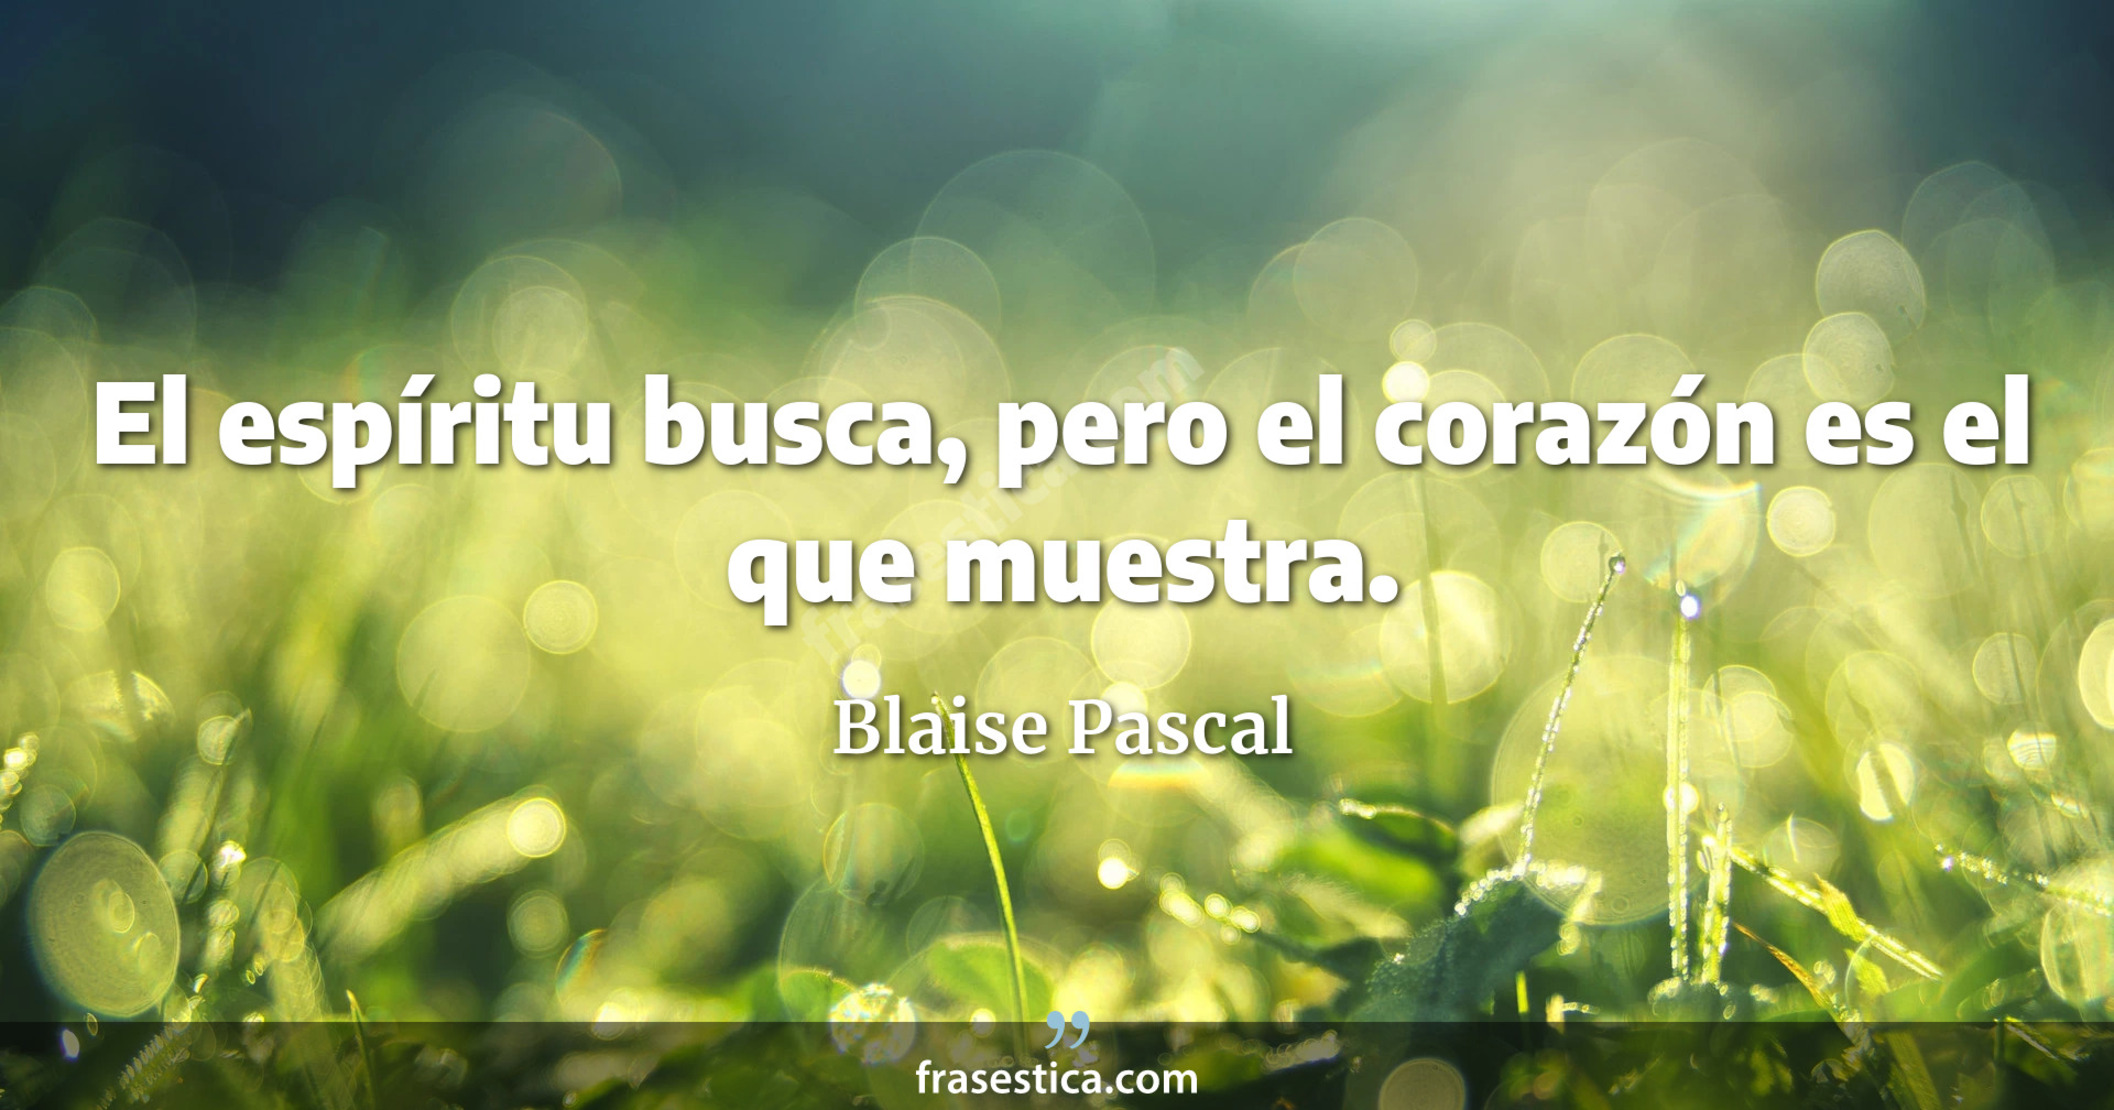 El espíritu busca, pero el corazón es el que muestra. - Blaise Pascal